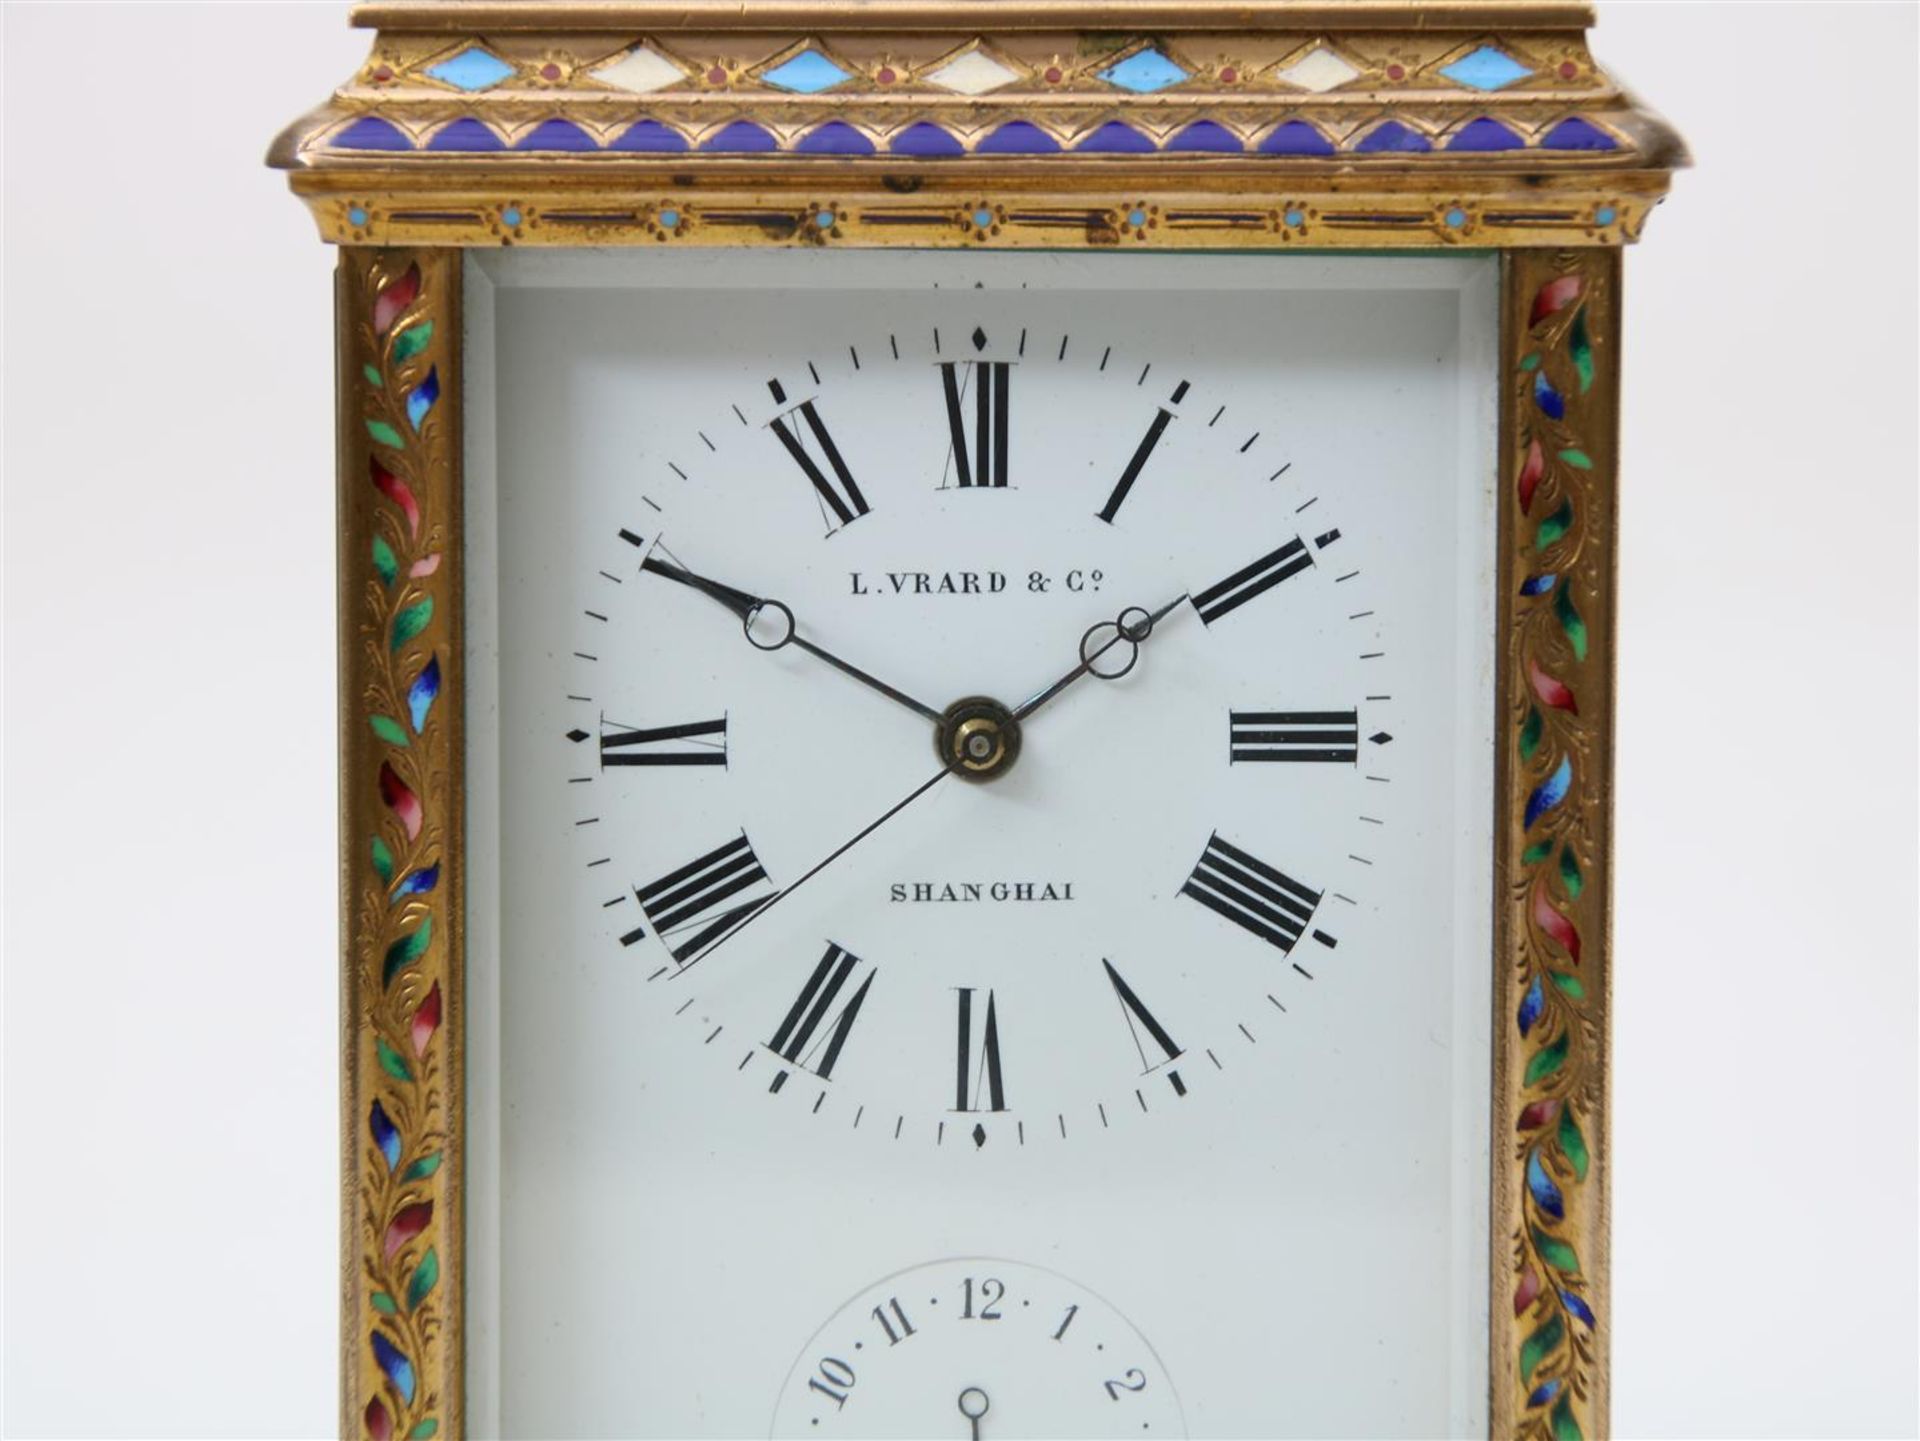 Carriage clock, L. Vrard & Co Shanghai  - Bild 2 aus 7